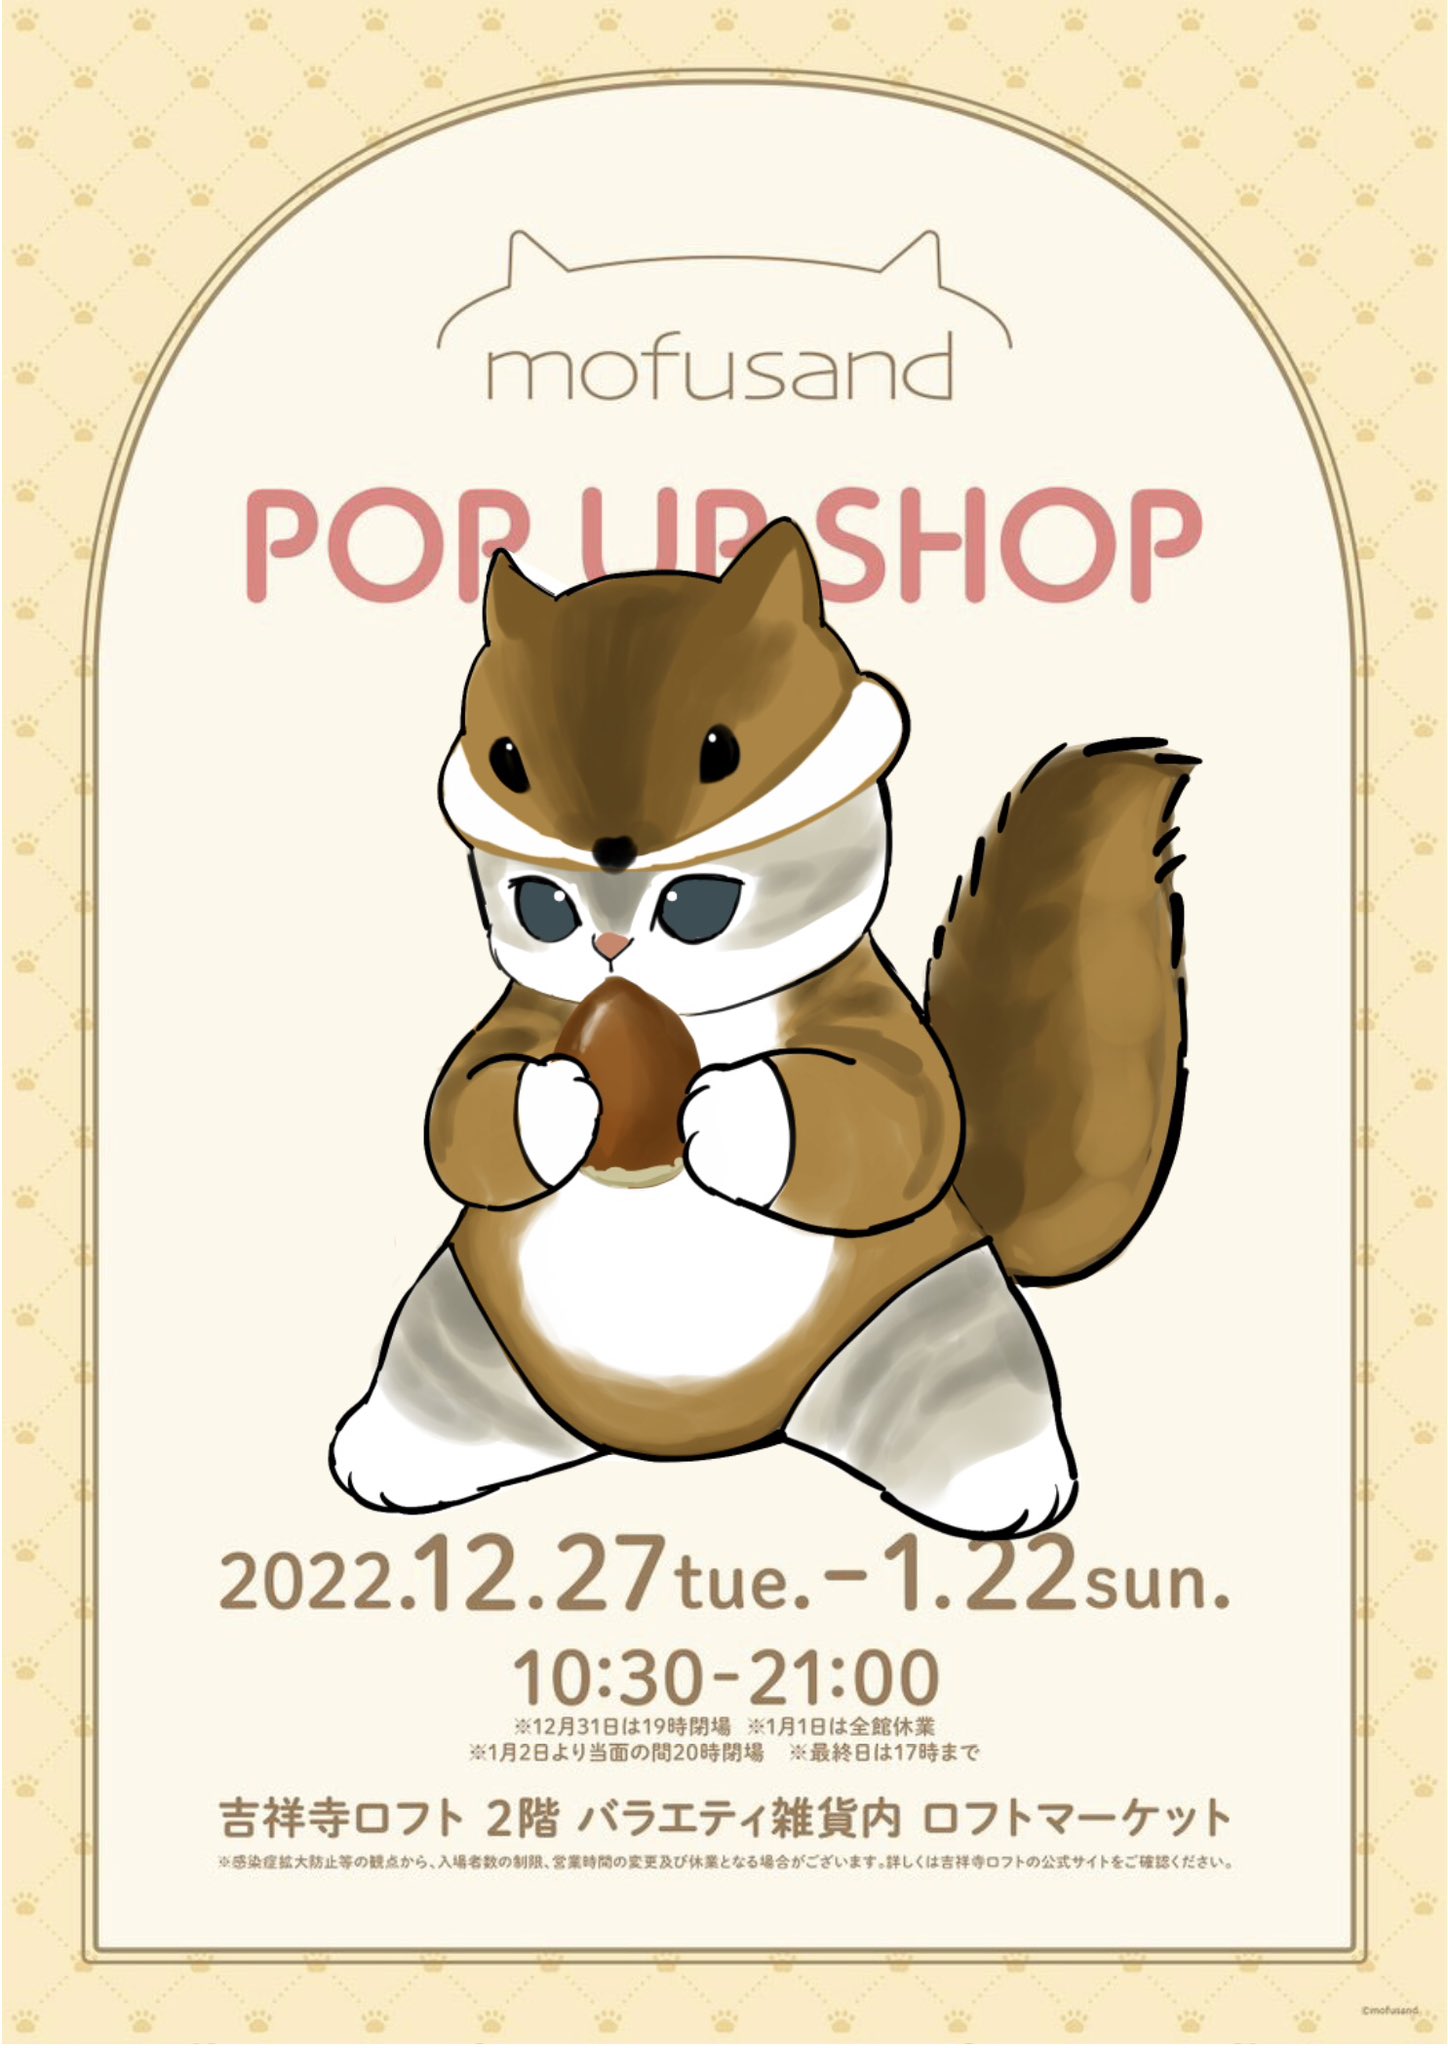 mofusand 新グッズ満載の限定ストア in 吉祥寺ロフト 12月27日より開催!